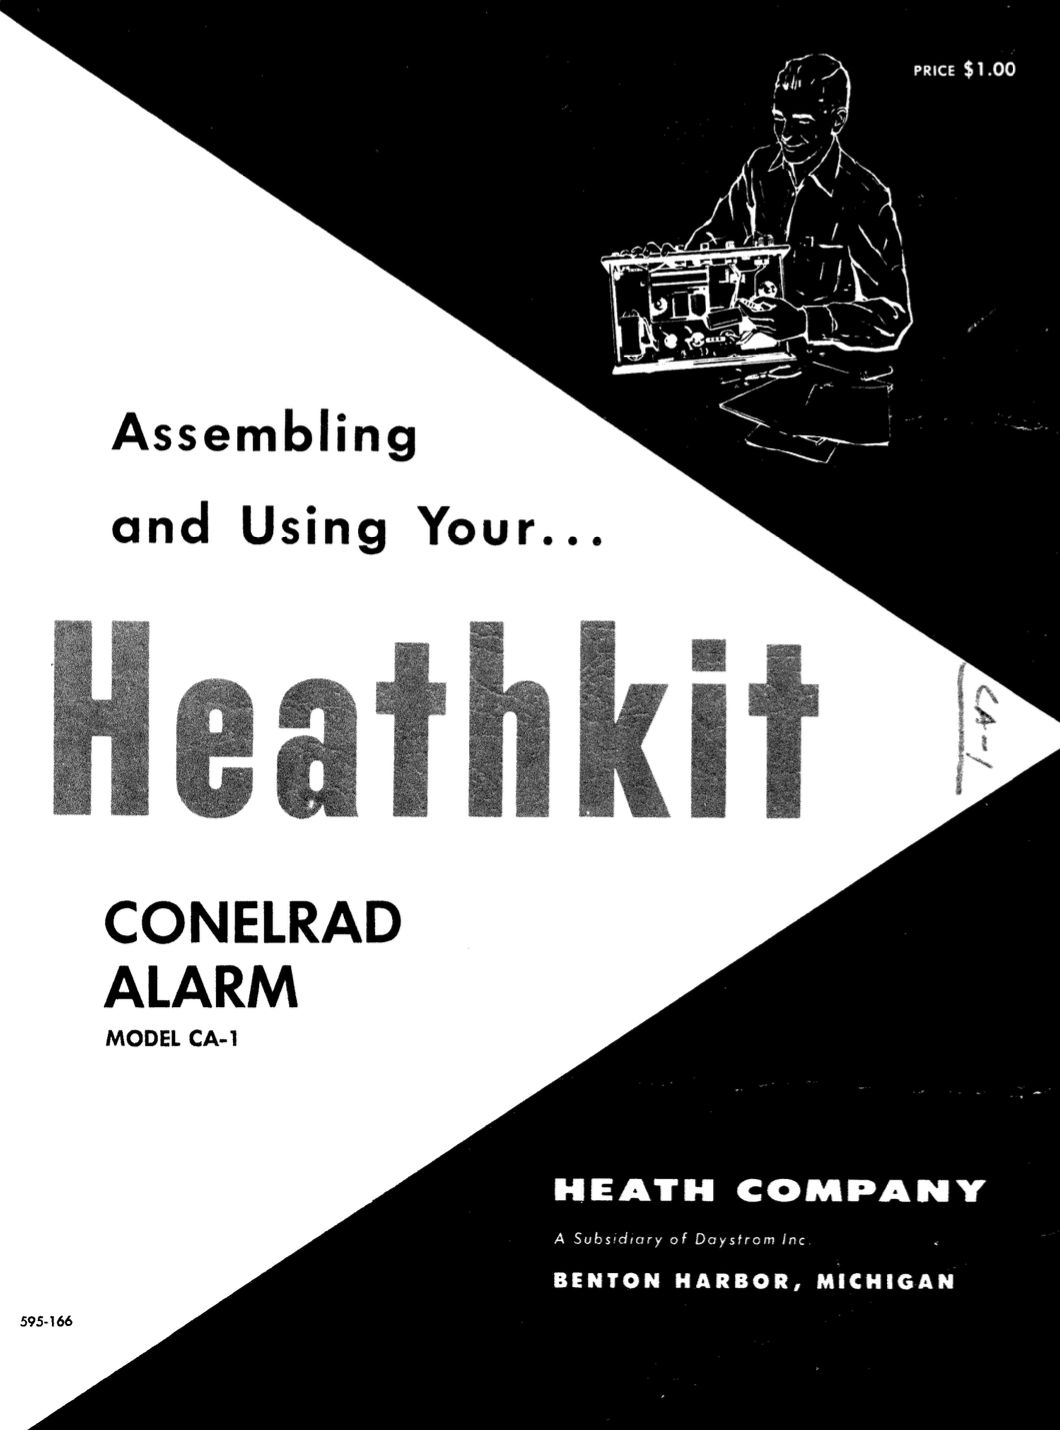 Heathkit CA-1 Conelrad Alarm - Assembly Instructions